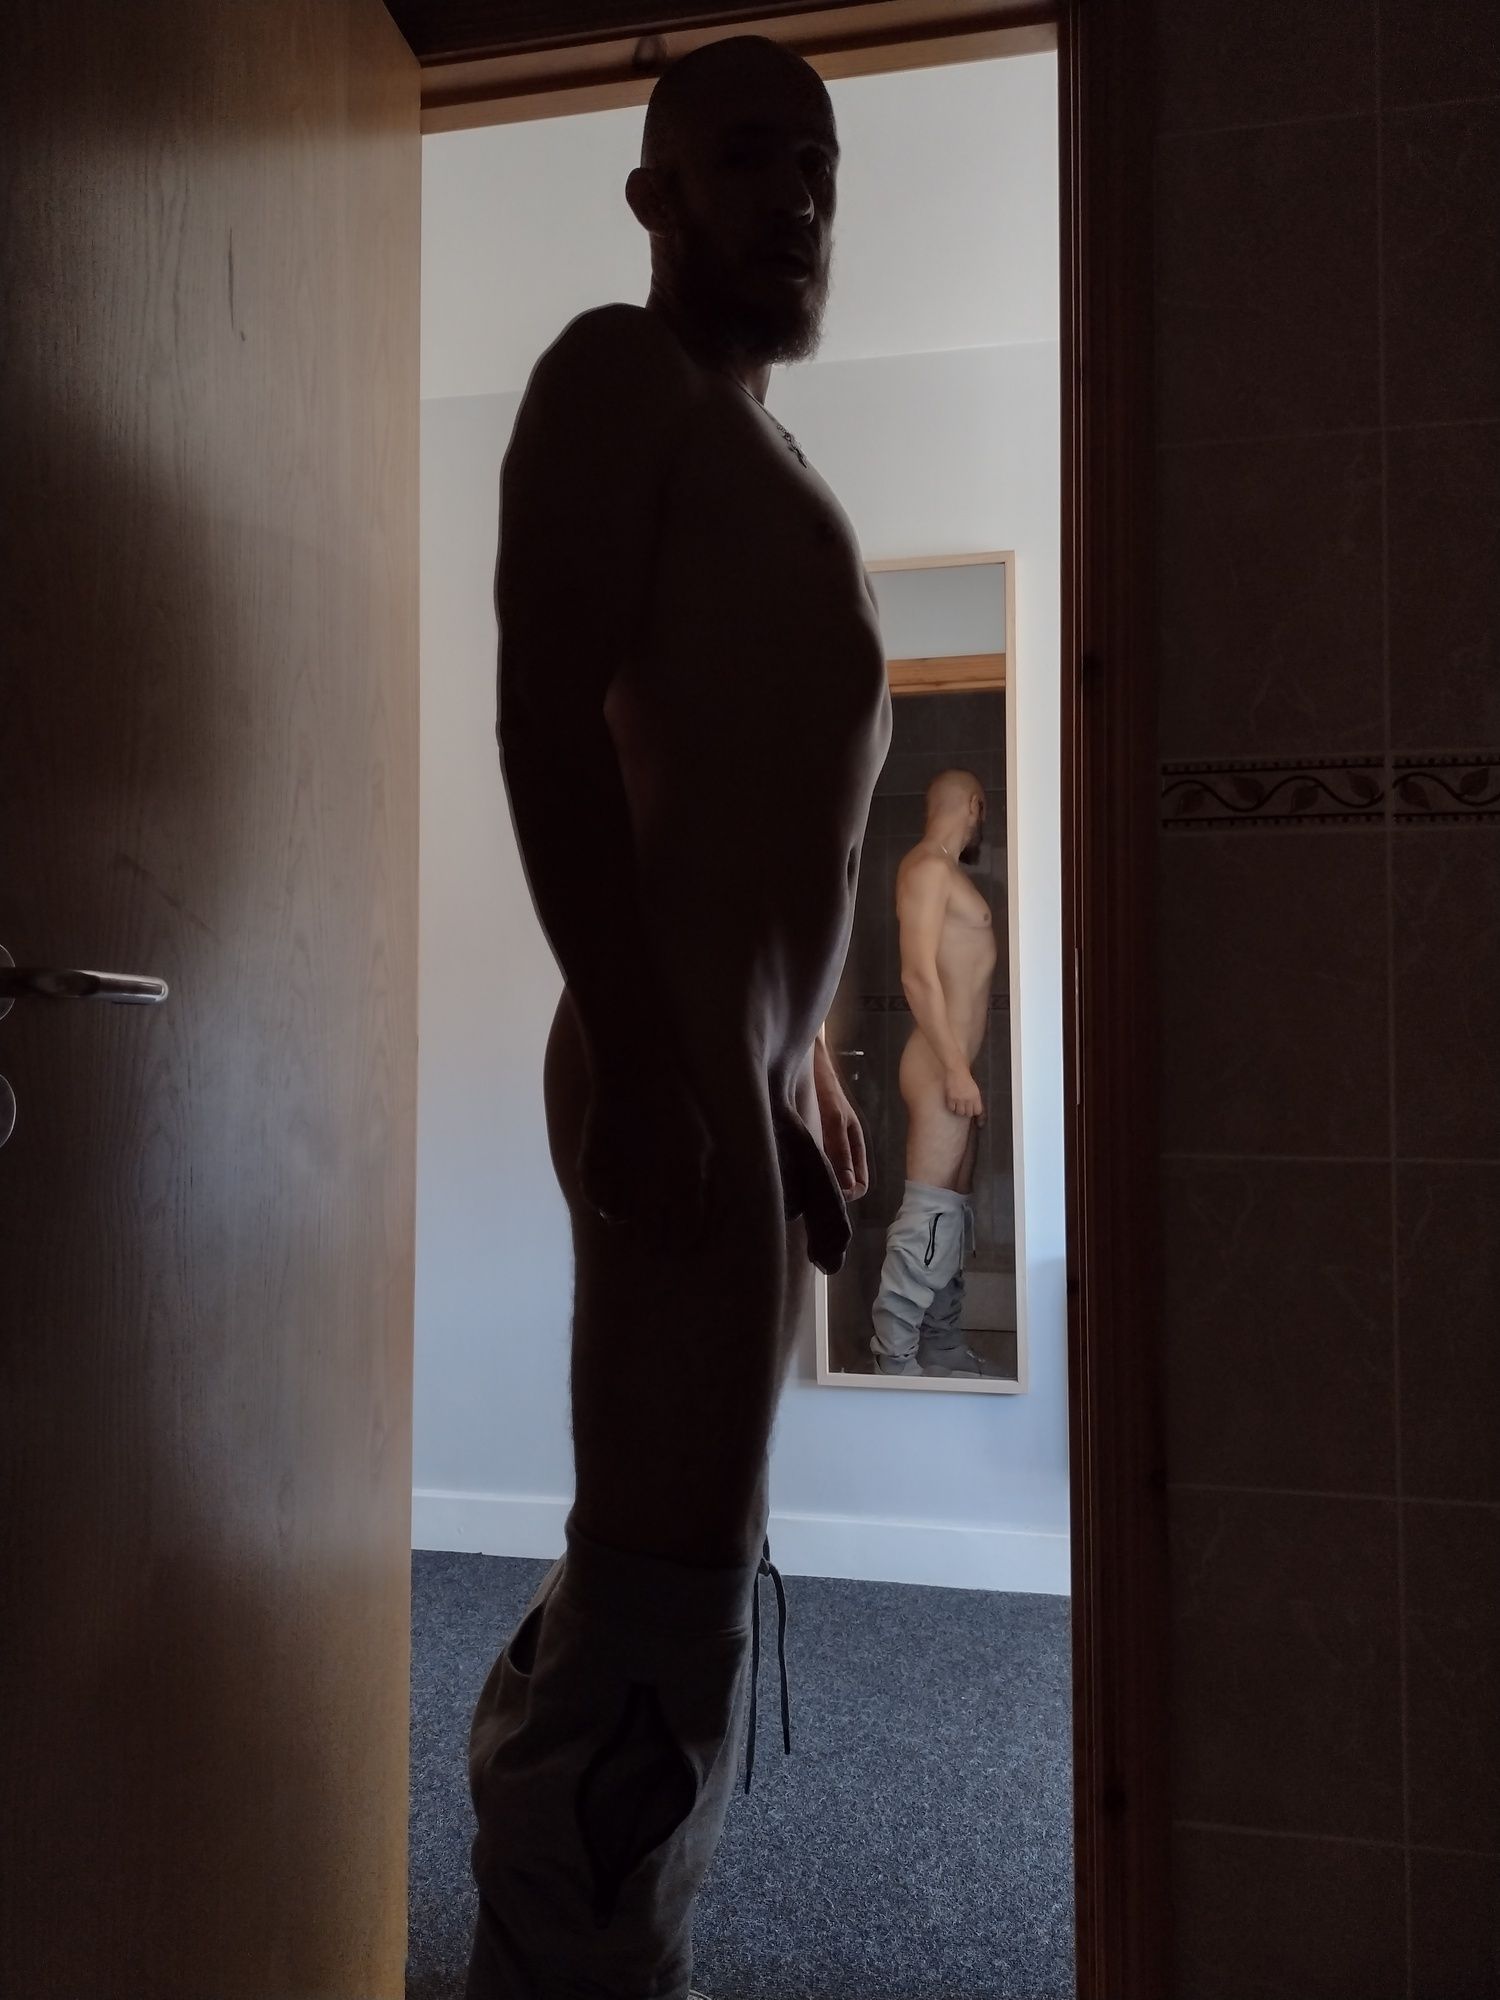 Posing nude in doorway #6